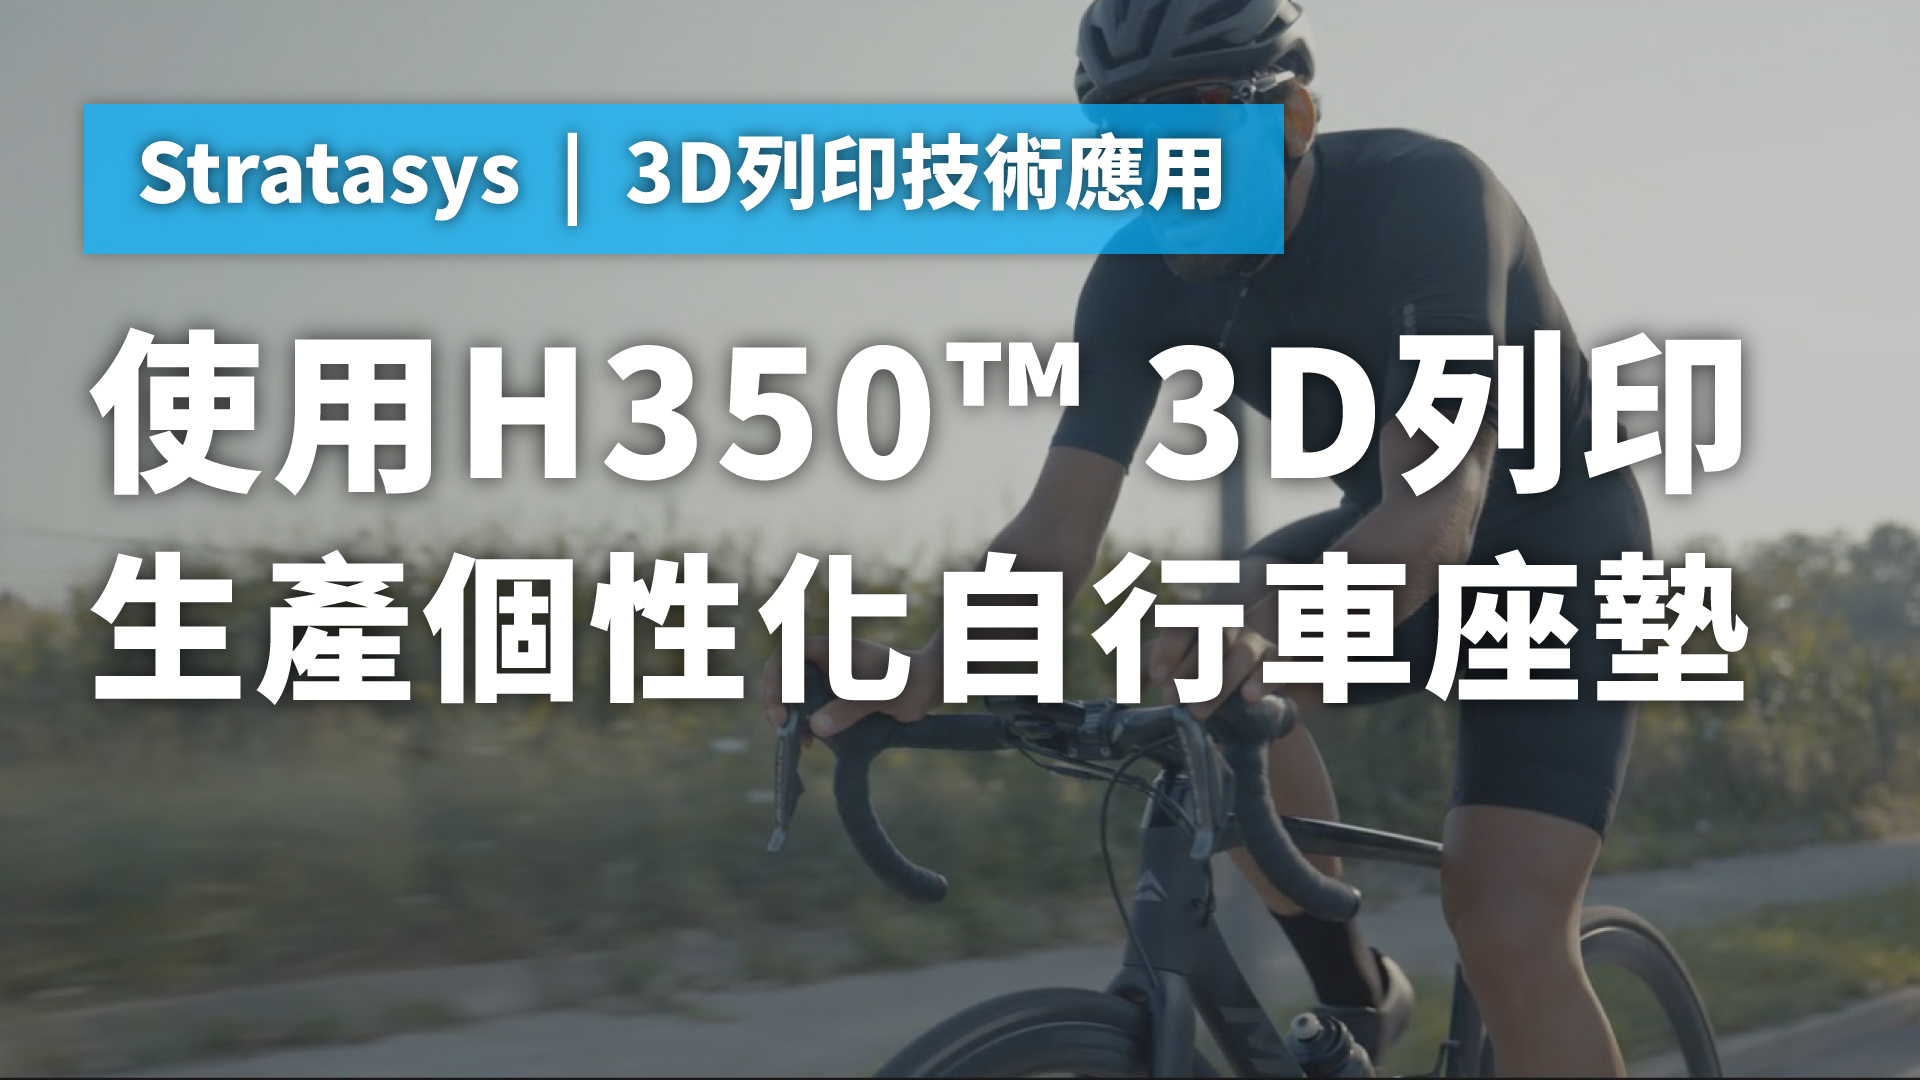 H350 3D列印機批量生產個性化自行車座墊